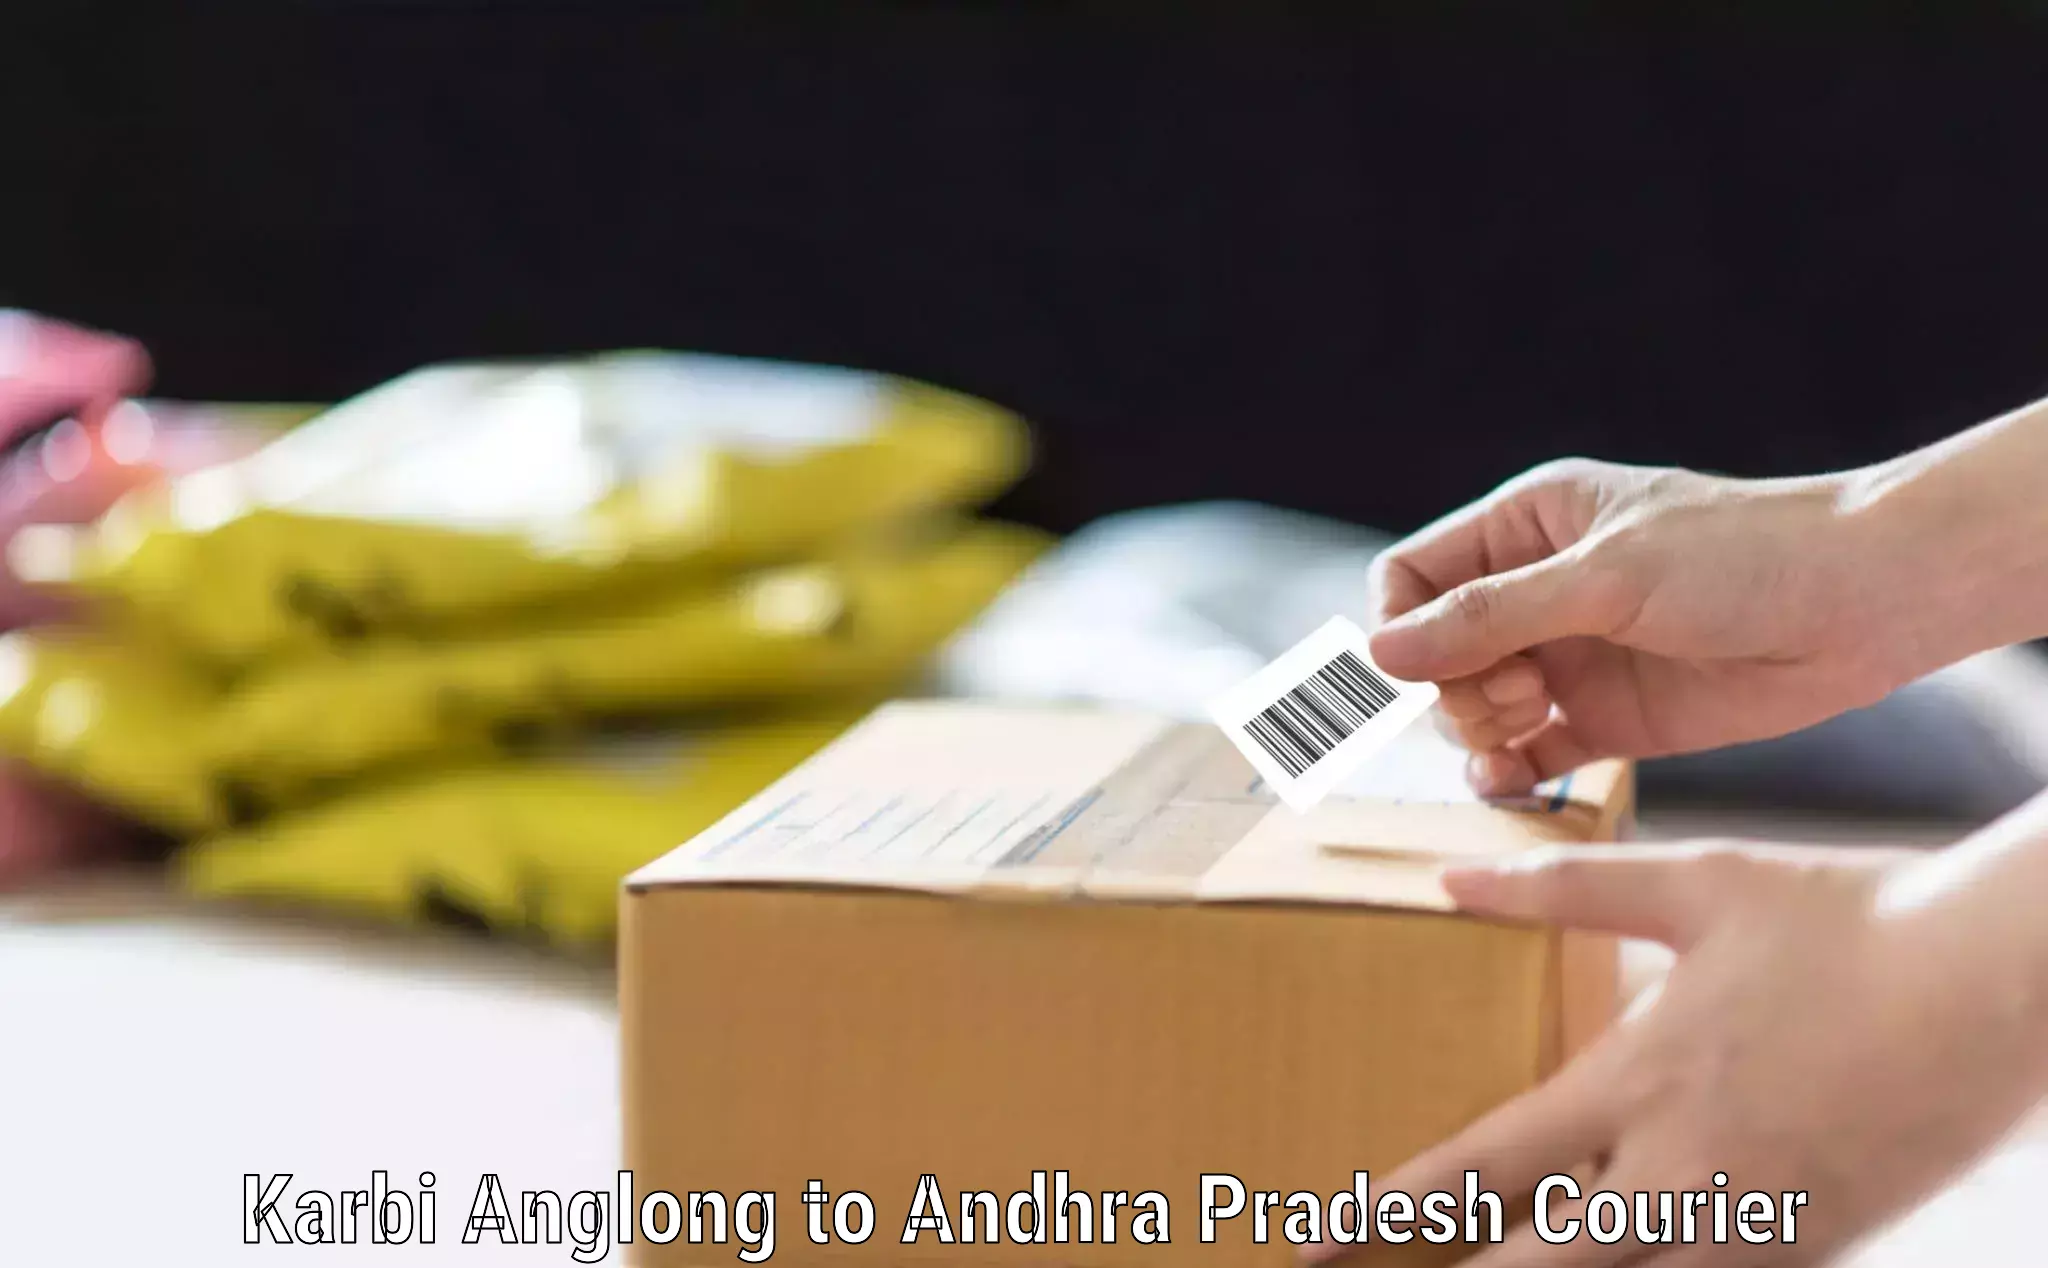 Baggage courier calculator Karbi Anglong to Andhra Pradesh